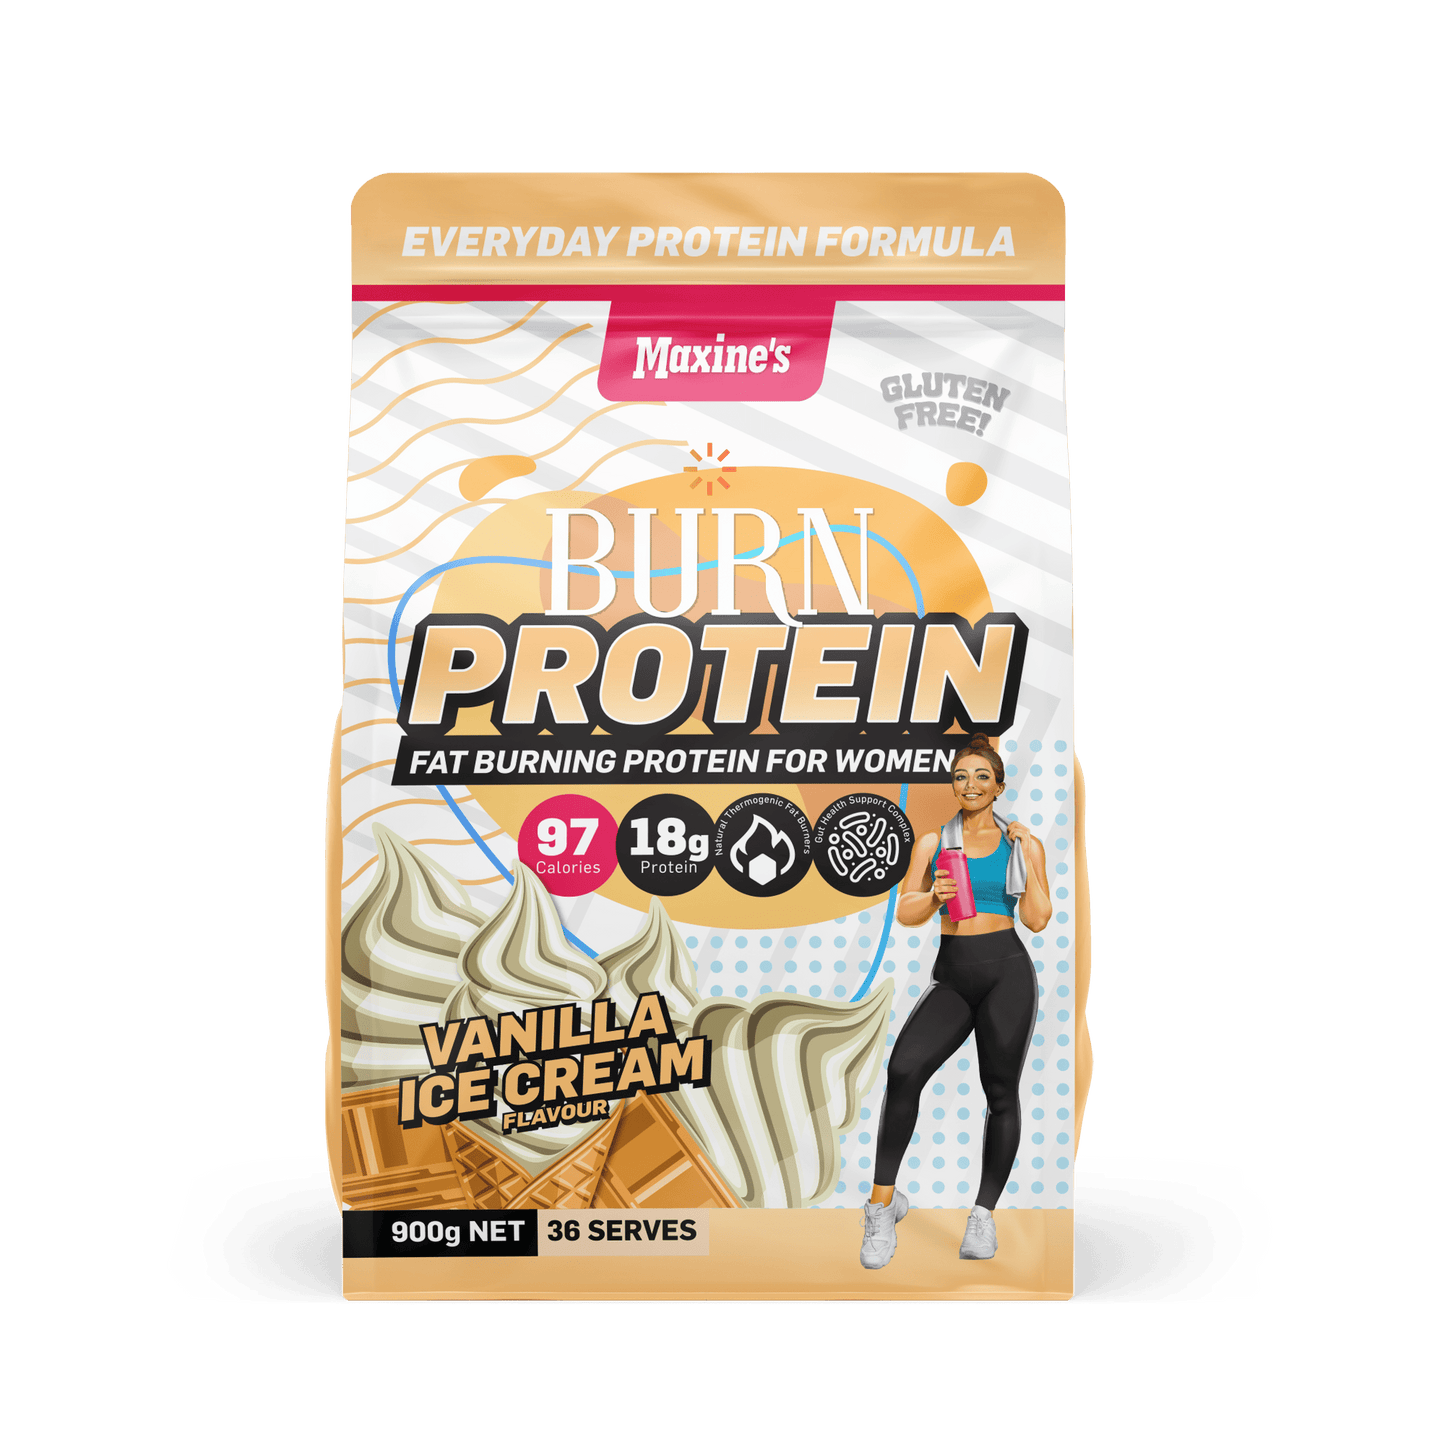 Burn Protein